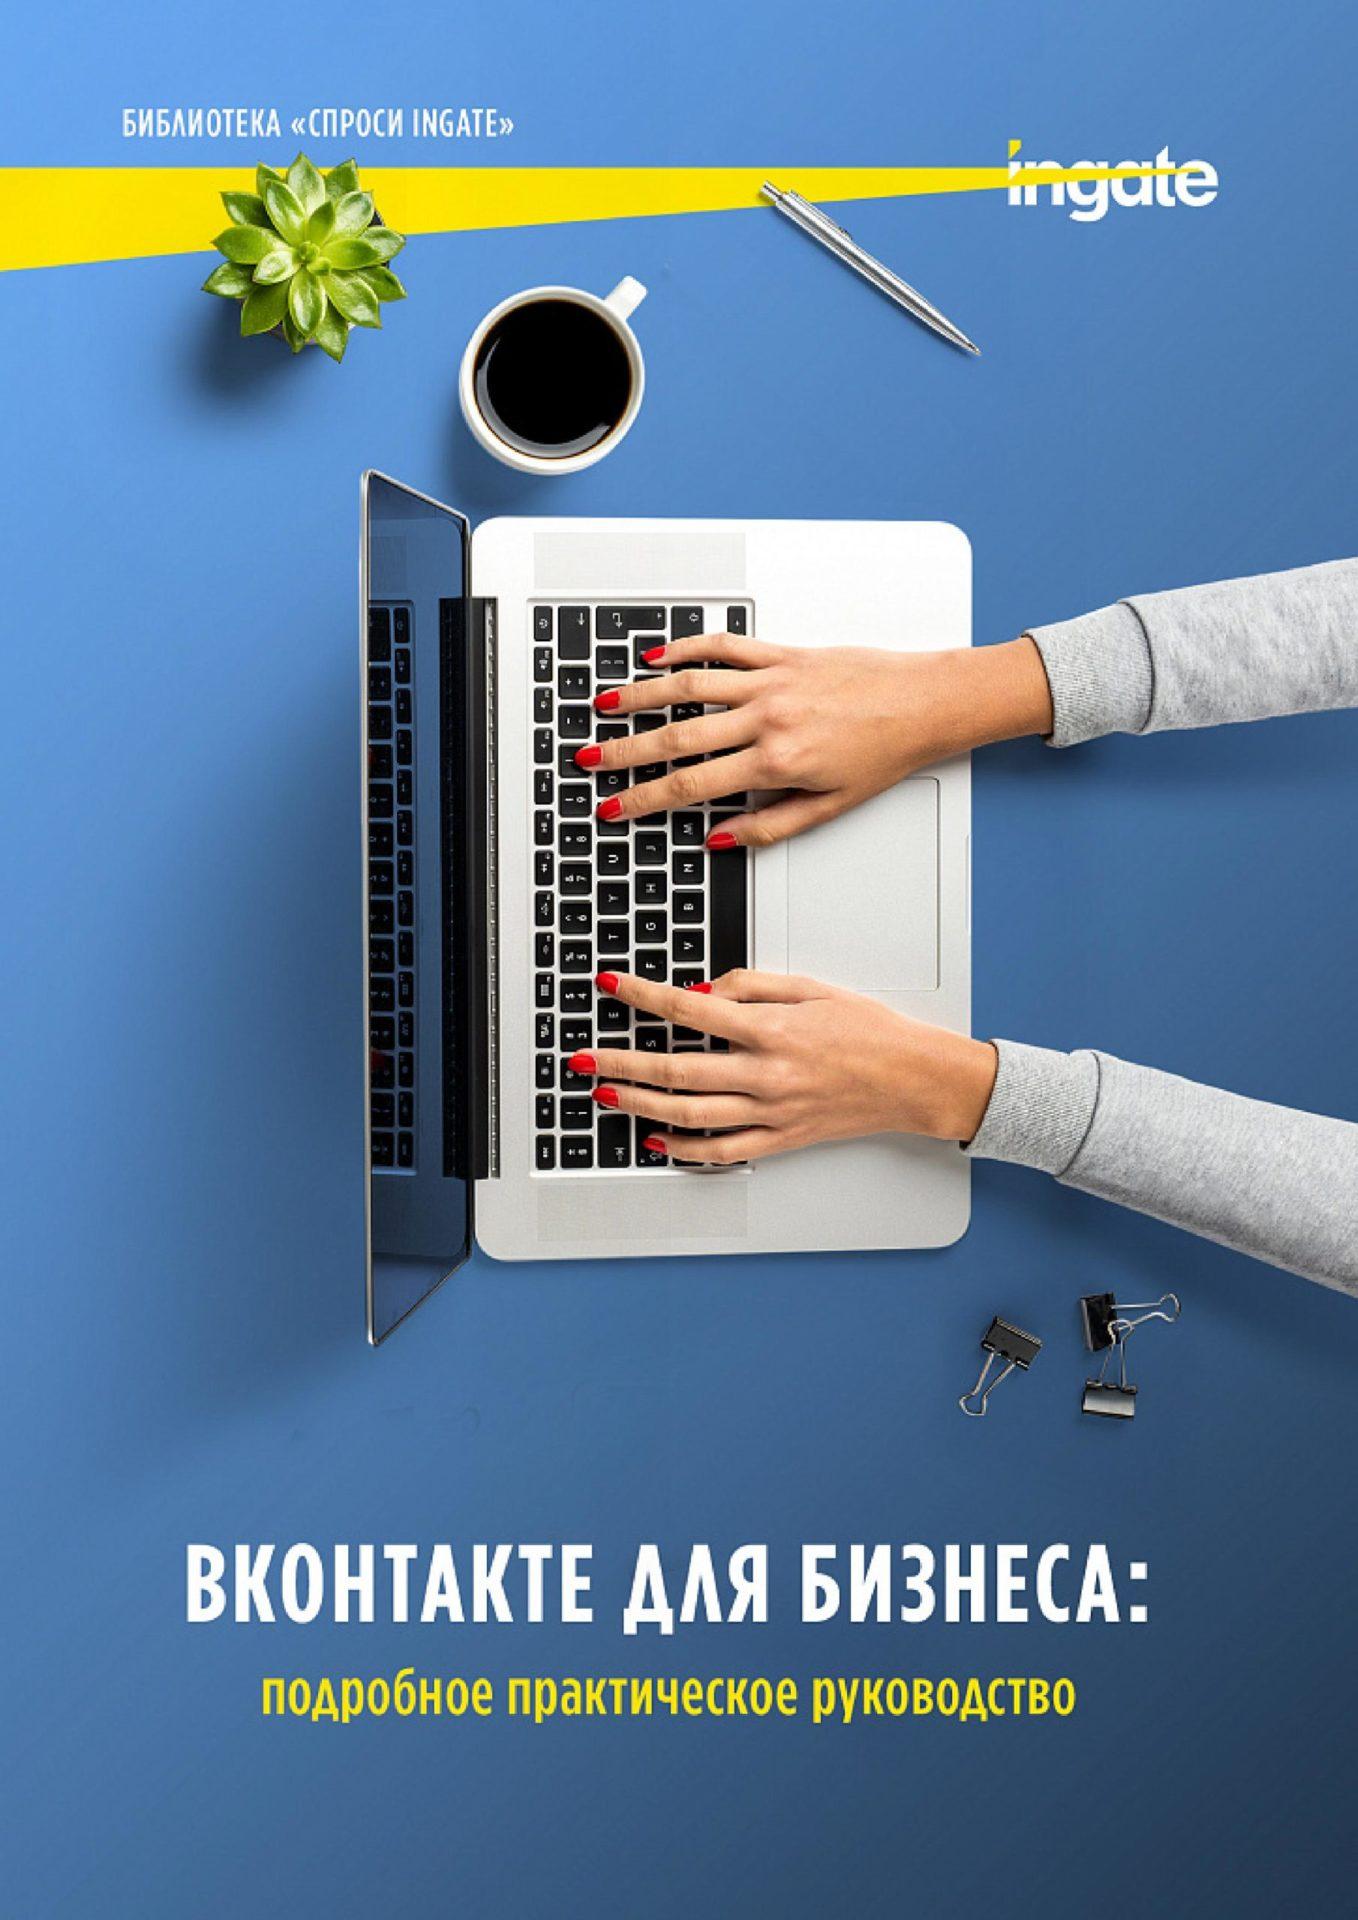 ВКонтакте для бизнеса: подробное практическое руководство